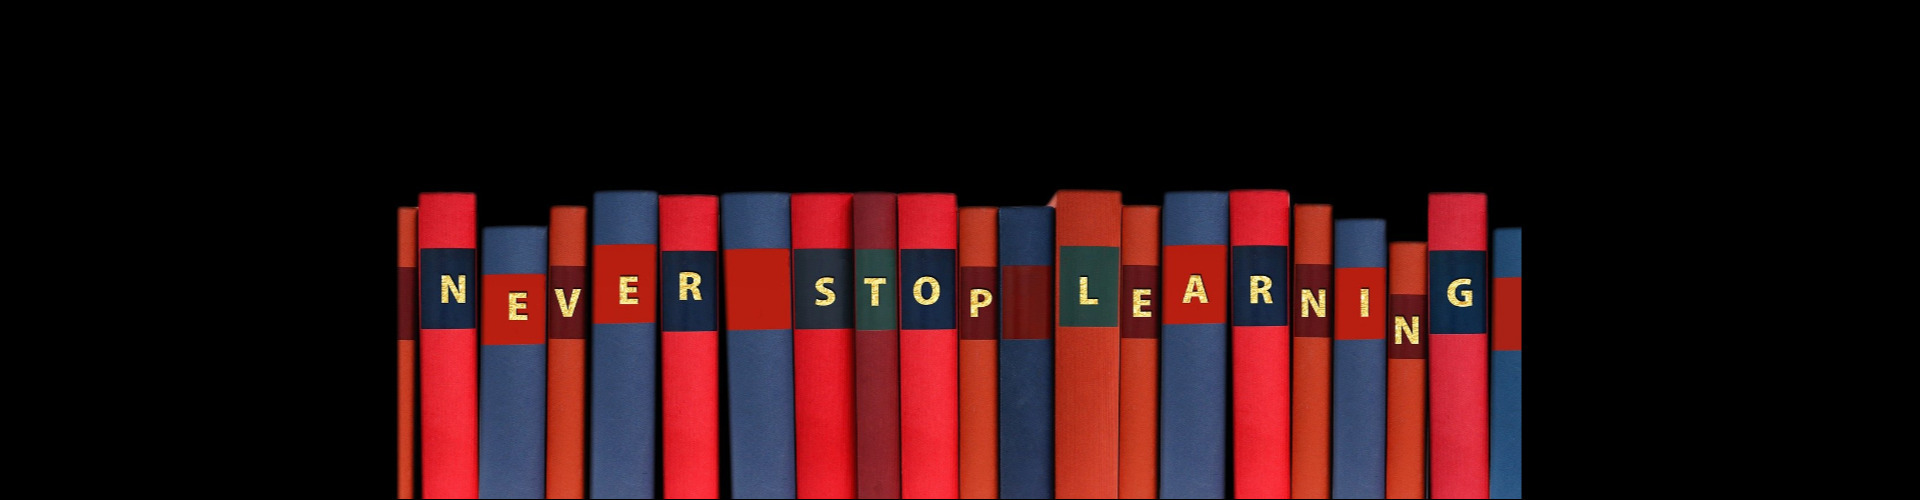 Bunte Bücher mit der Aufschrift "NEVER STOP LEARNING"